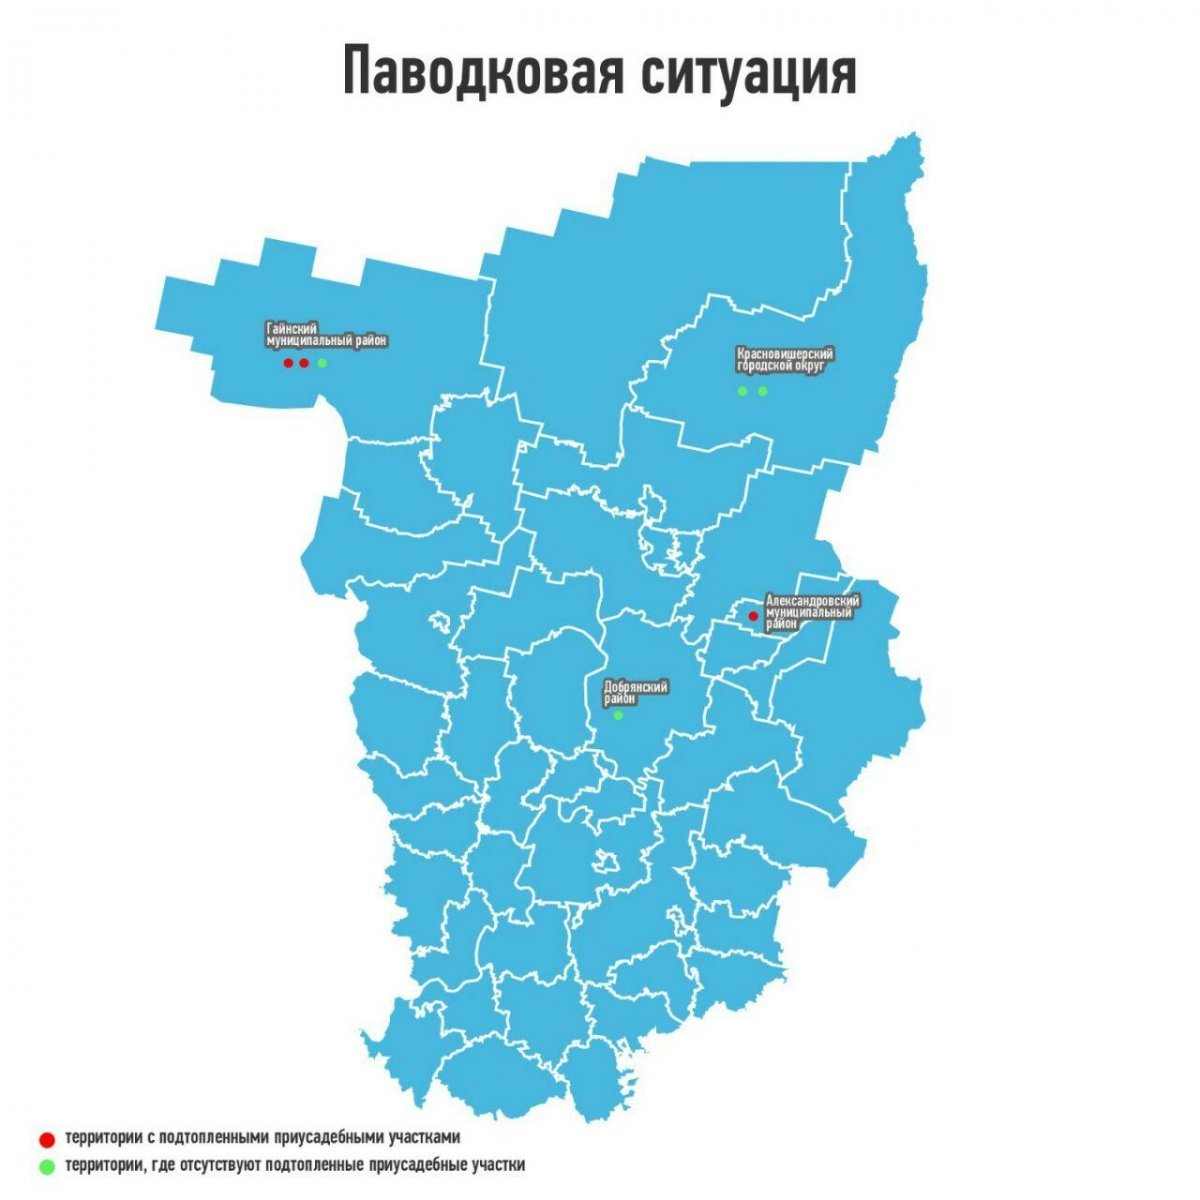 Пермь край карта